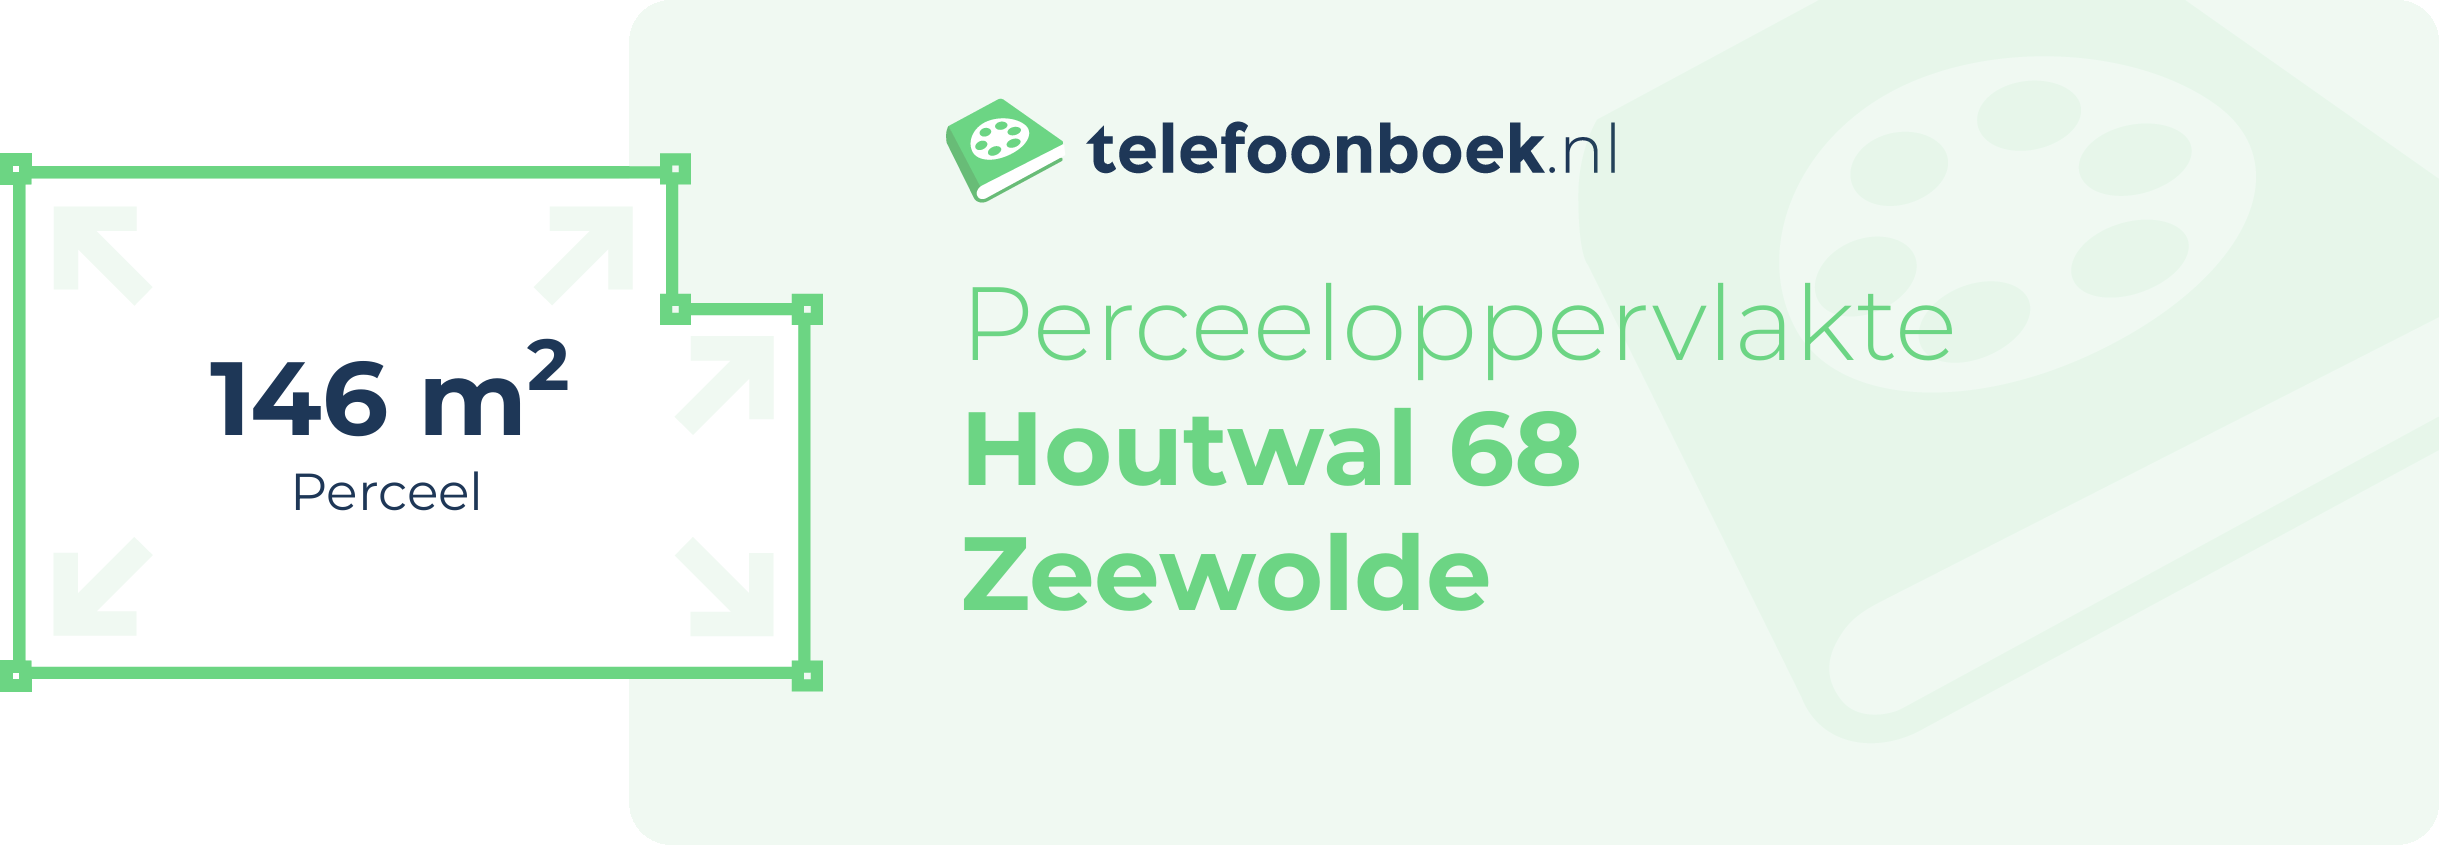 Perceeloppervlakte Houtwal 68 Zeewolde